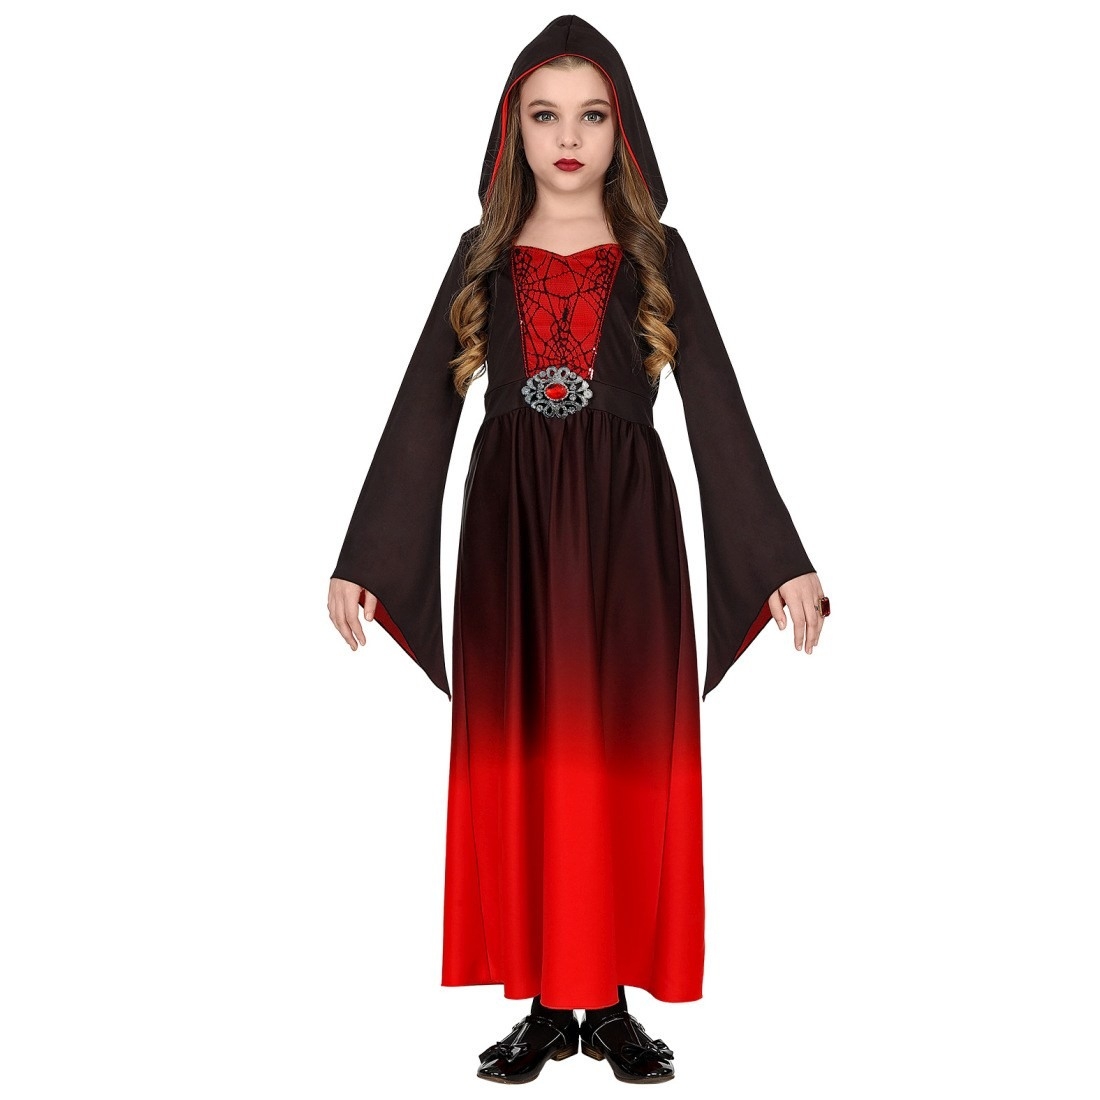 Designer Schön Kleid Rot Schwarz Boutique15 Einfach Kleid Rot Schwarz Ärmel